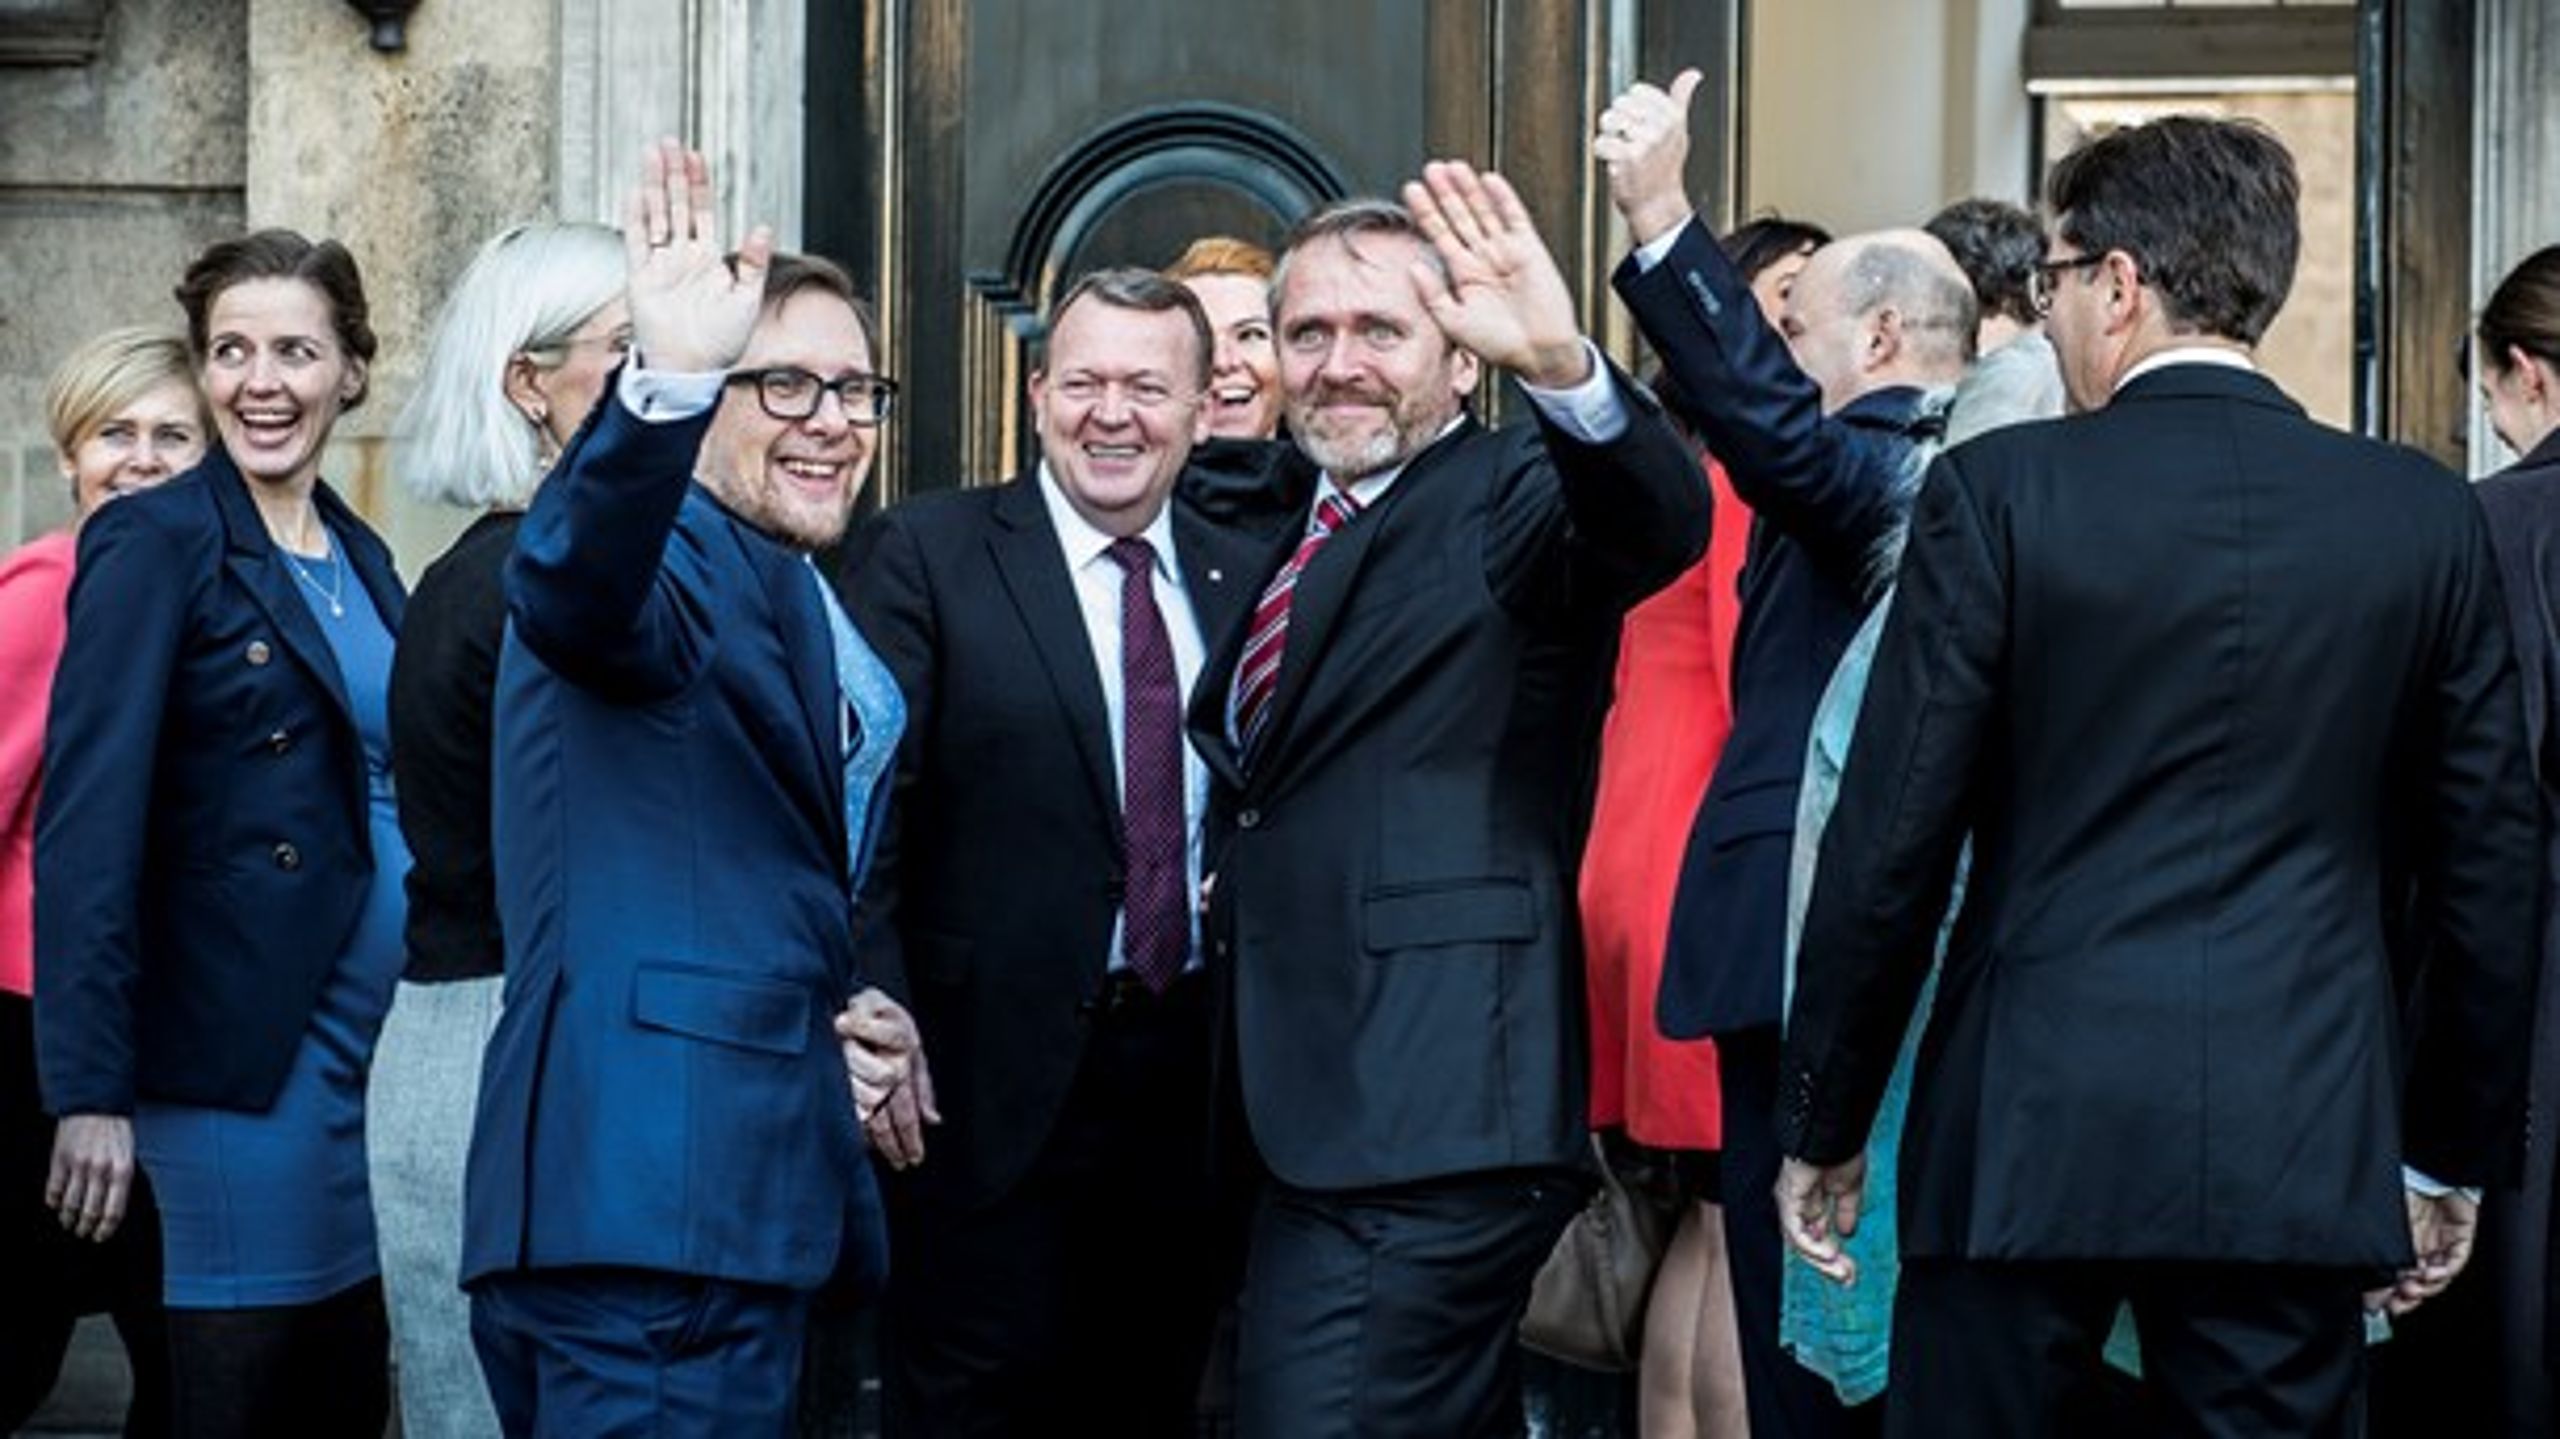 Thumbs up fra Pape og stort smil hos Støjberg. Ifølge en ny ministermåling er Inger Støjberg (V) og Søren Pape (K) de mest populære ministre herhjemme.